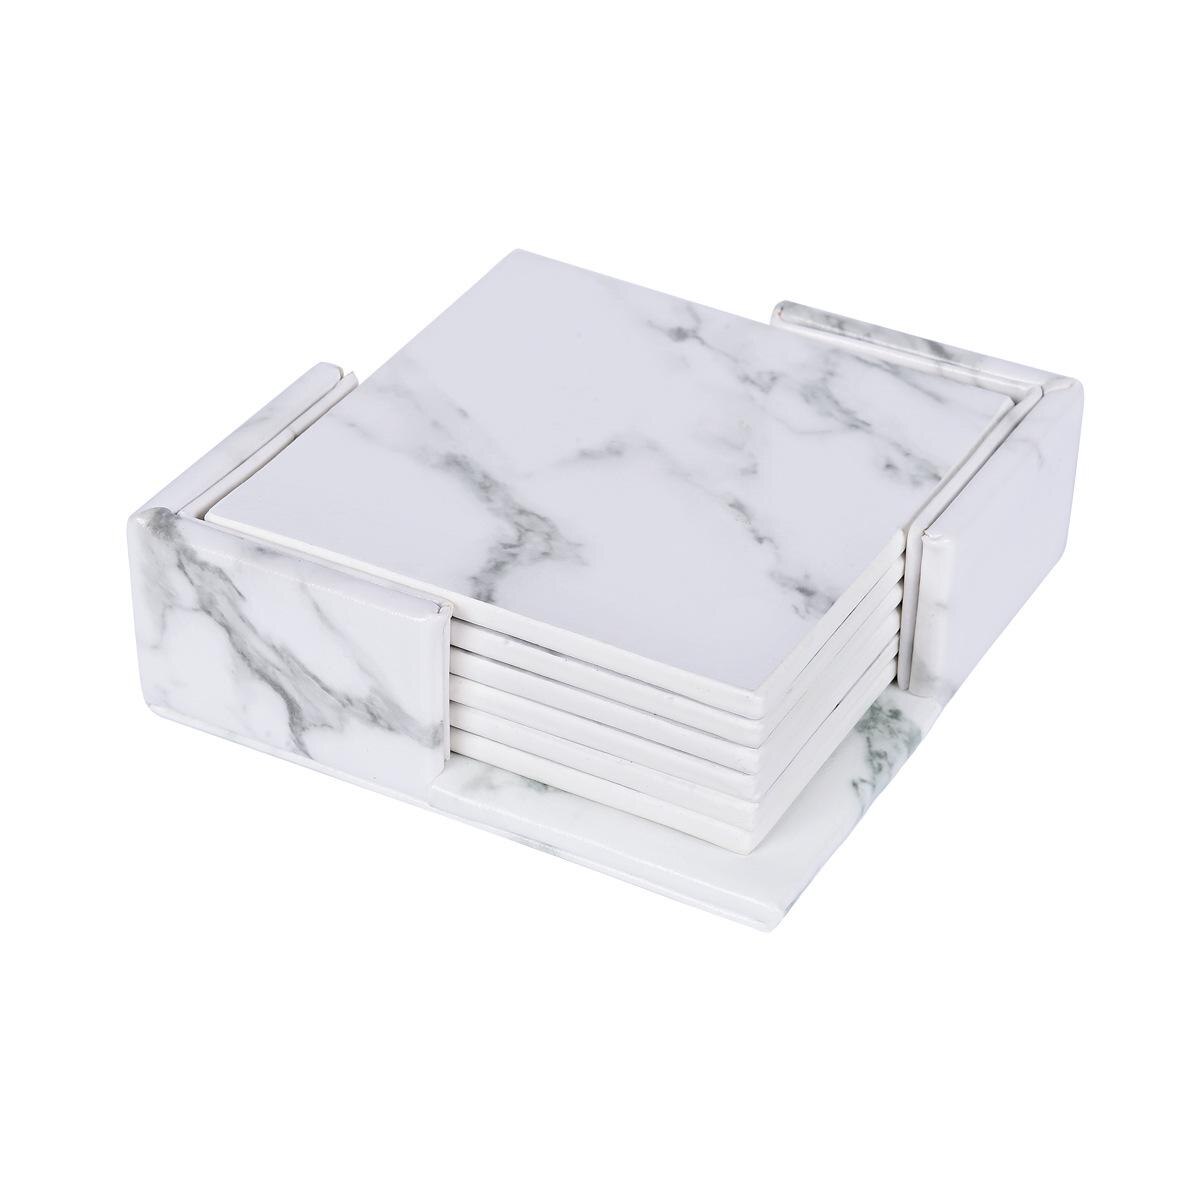 6 stk / sæt marmor pu læder rund firkantet drinkunderlag placemat kop måttepudeholder sort hvid chic dekoration køkkenudstyr: Firkantet marmor hvid